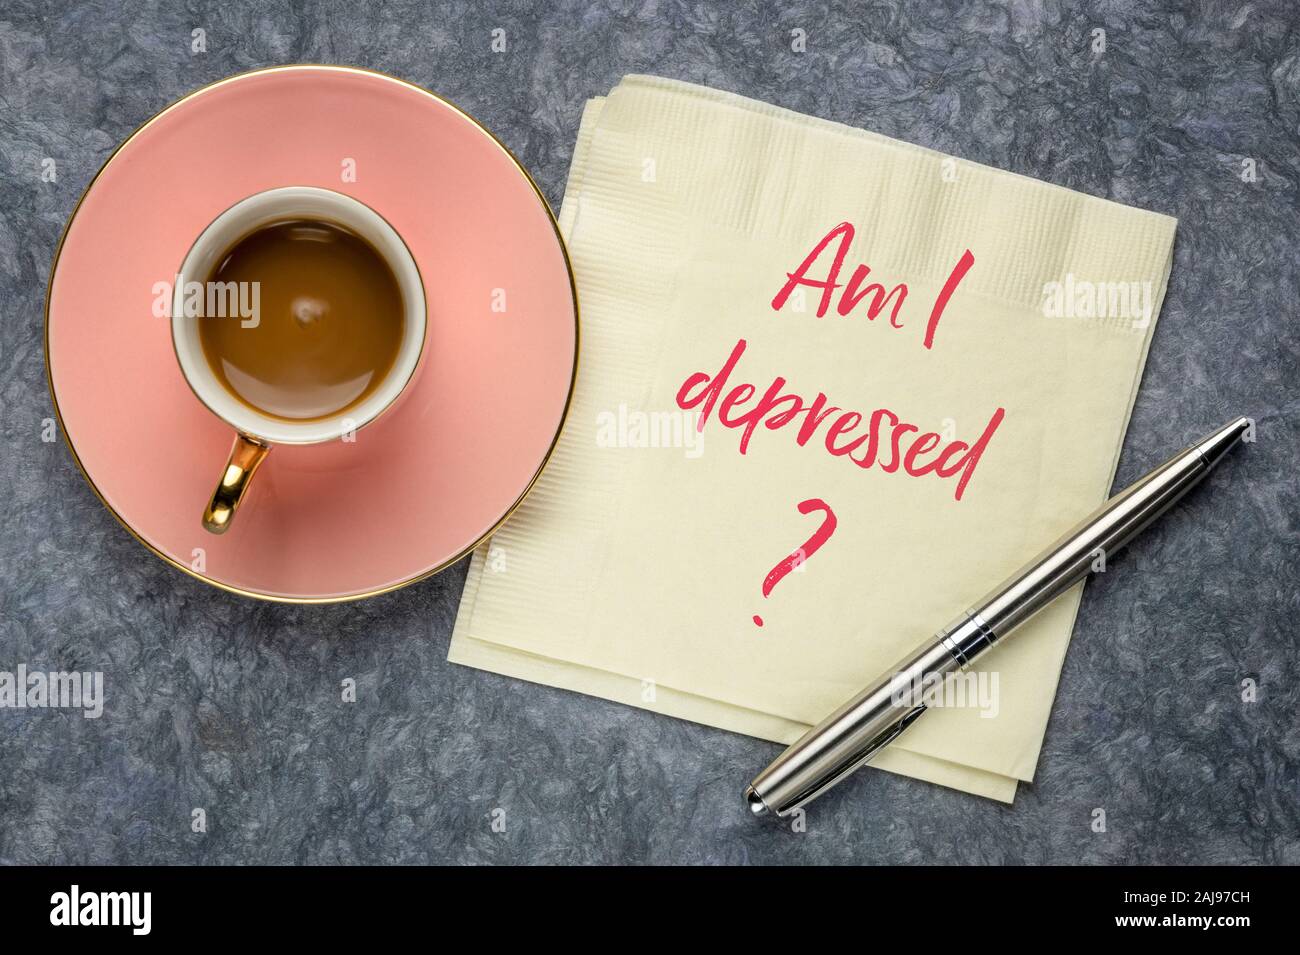 Bin ich depressiv? Eine Frage auf einer Serviette mit einer Tasse Kaffee. Depression, Wohlbefinden und psychische Gesundheit Konzept. Stockfoto